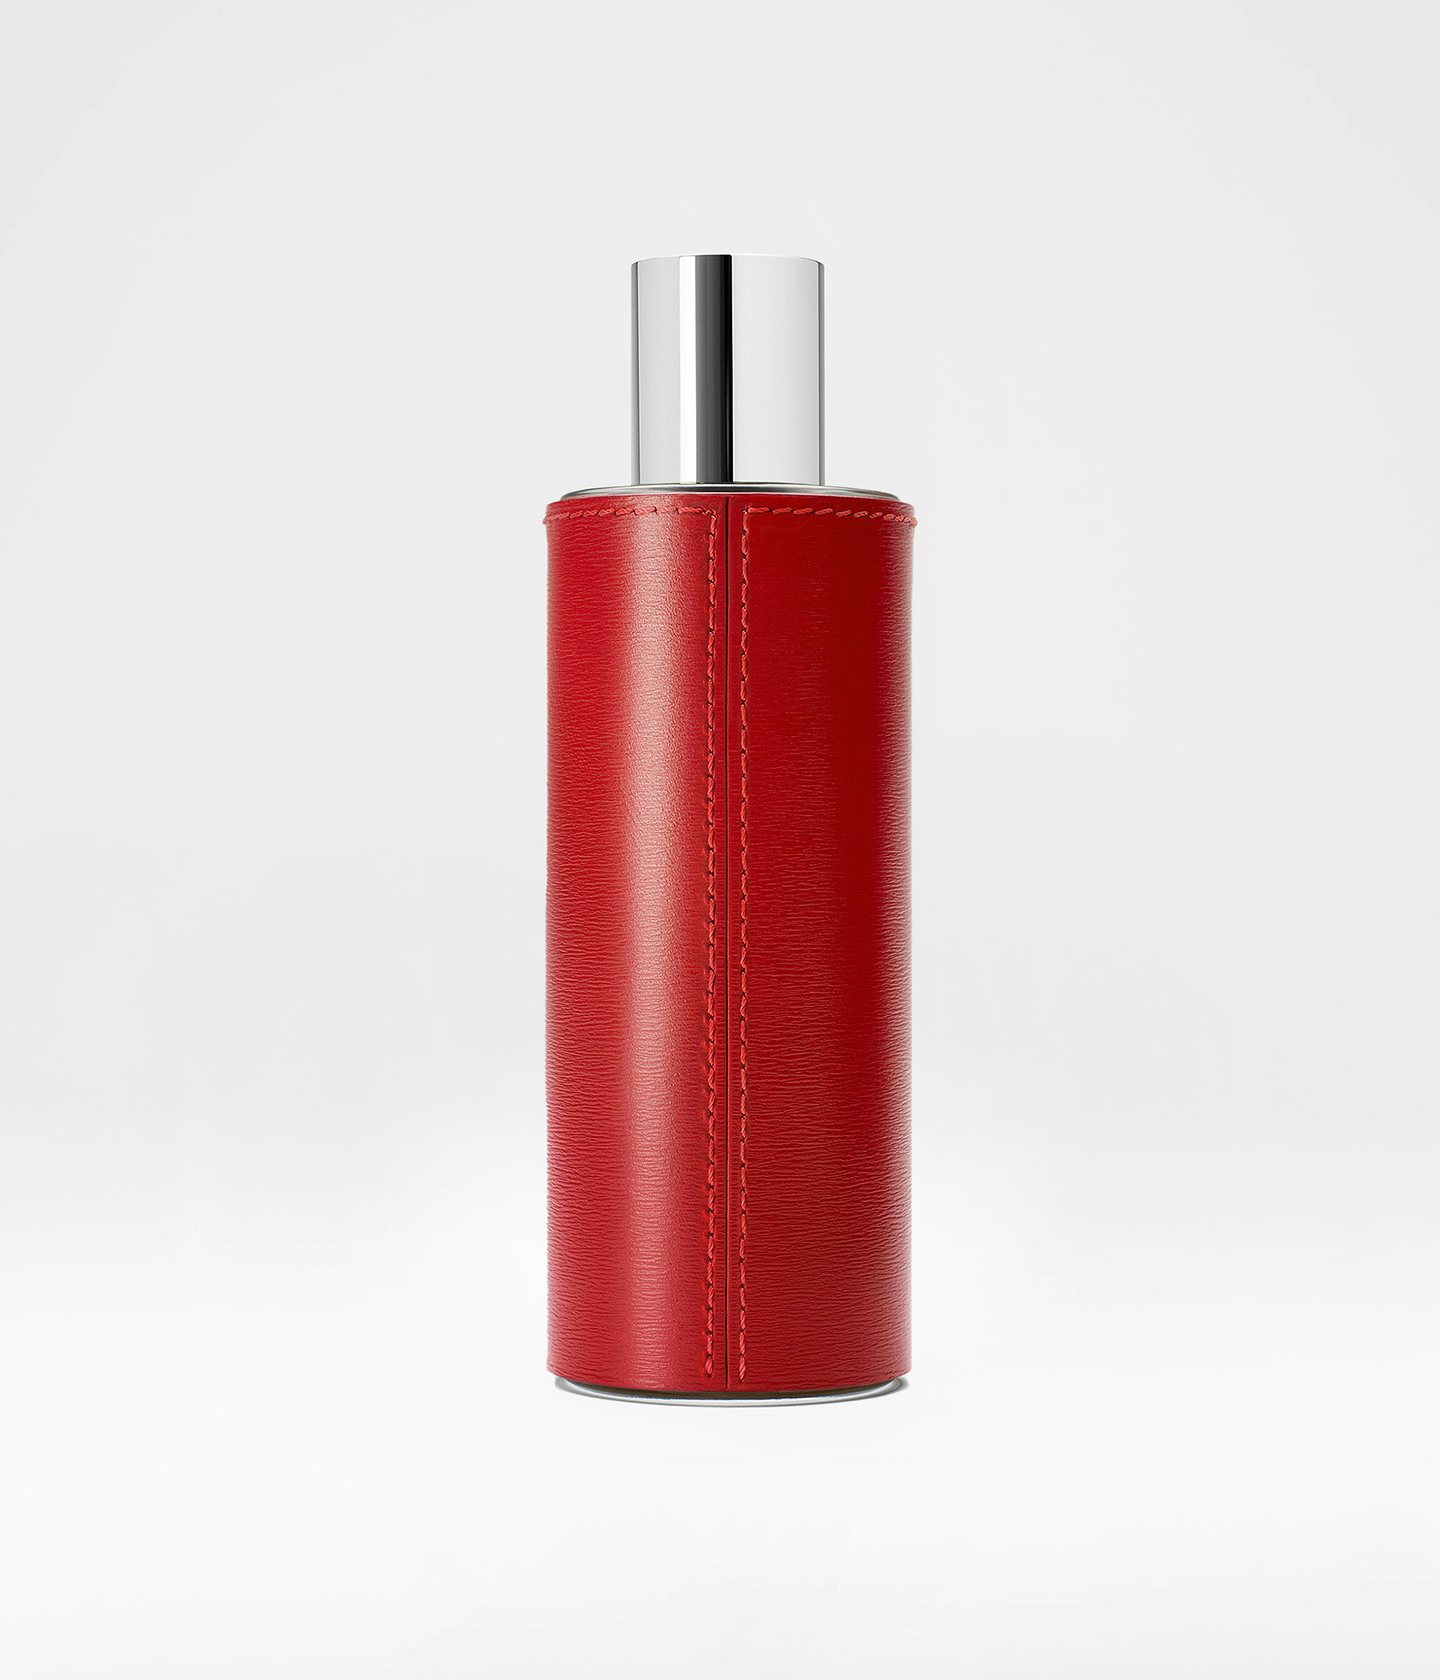 La bouche rouge Extrait de Parfum Rouge in rouge leather case